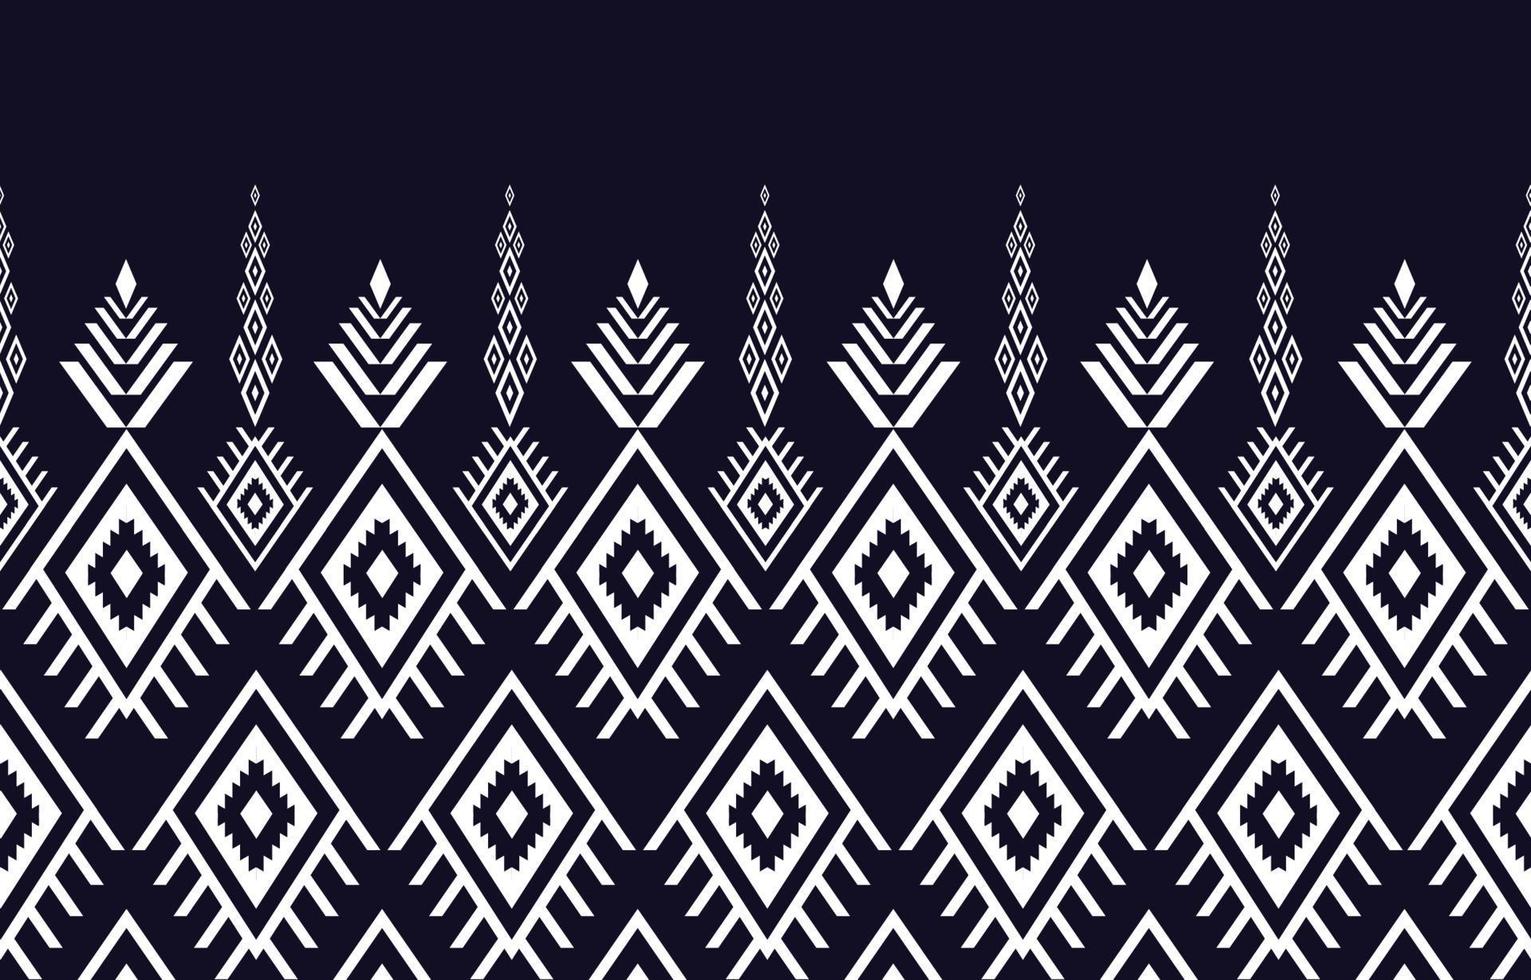 disegno geometrico etnico astratto senza soluzione di continuità in stile nativo disegni per sfondi, sfondi, tappeti, involucri, tessuti, batik, illustrazione vettoriale tessili